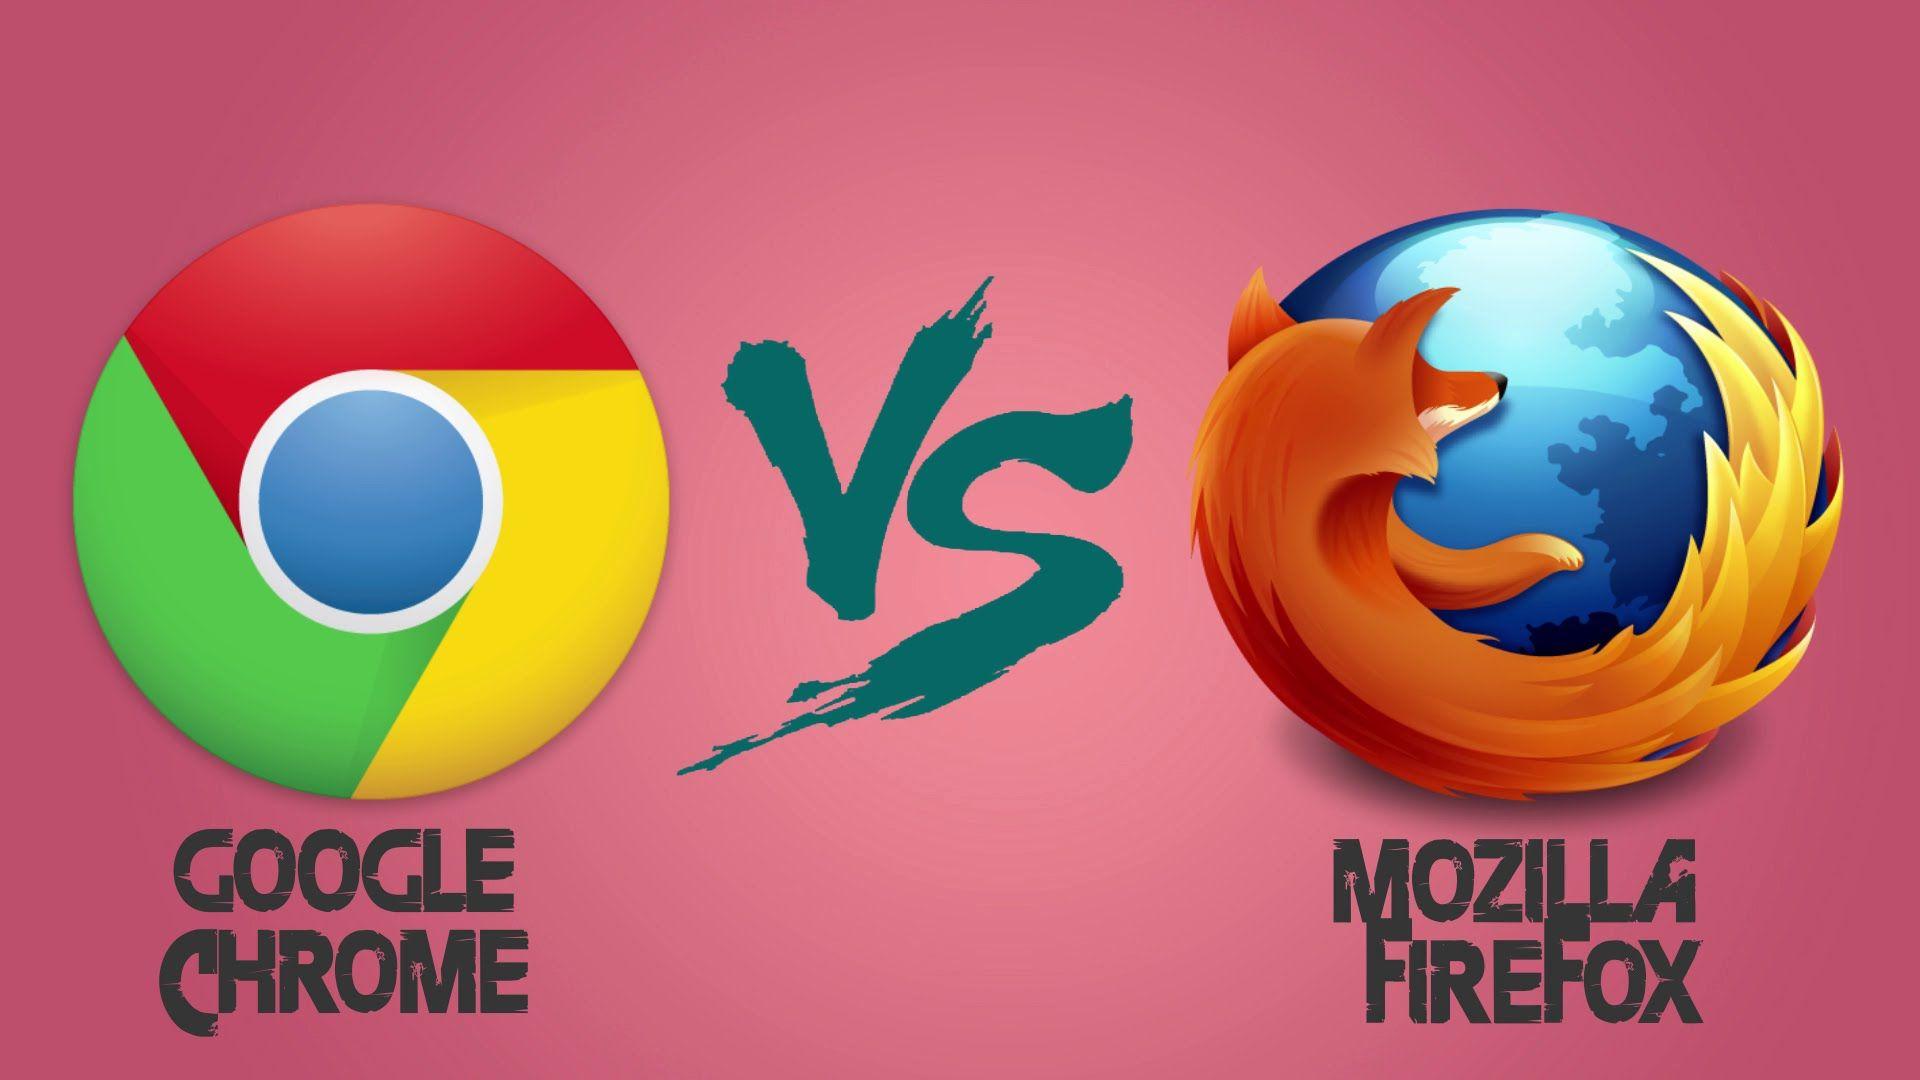 Google chrome vs Mozilla Firefox 2016